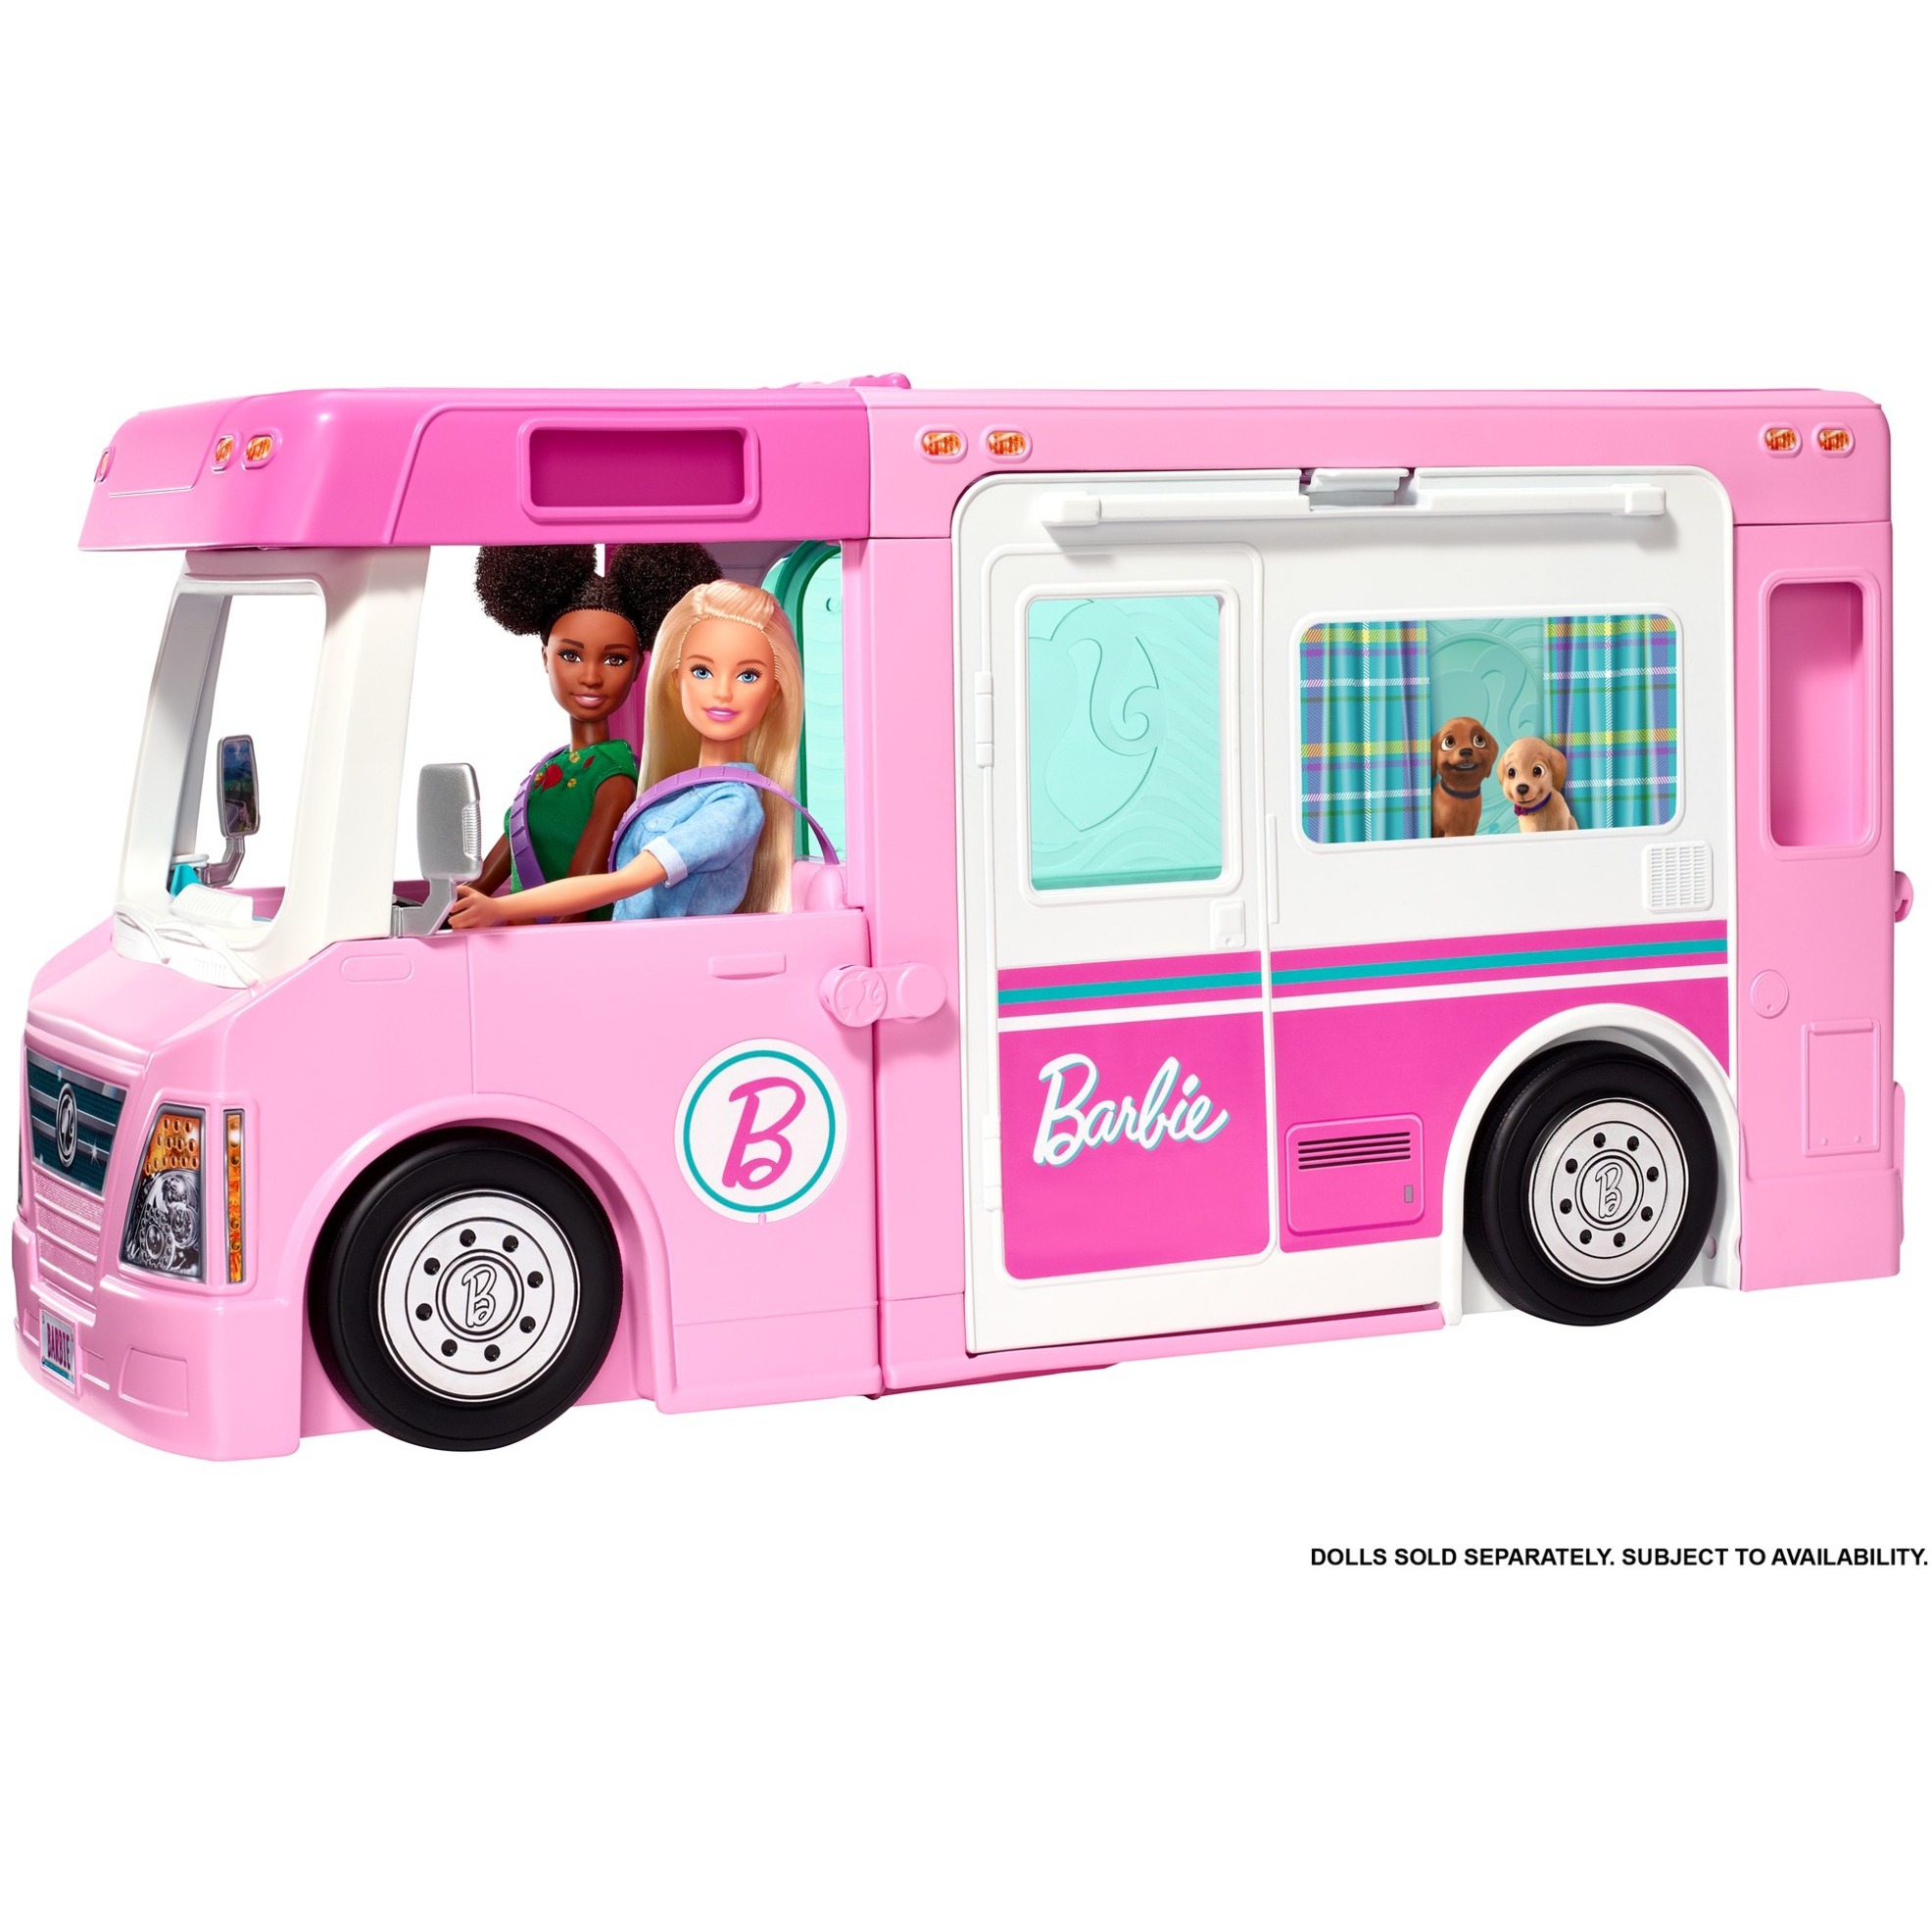 Image of Alternate - Barbie 3-in-1 Super Abenteuer-Camper, Puppe online einkaufen bei Alternate